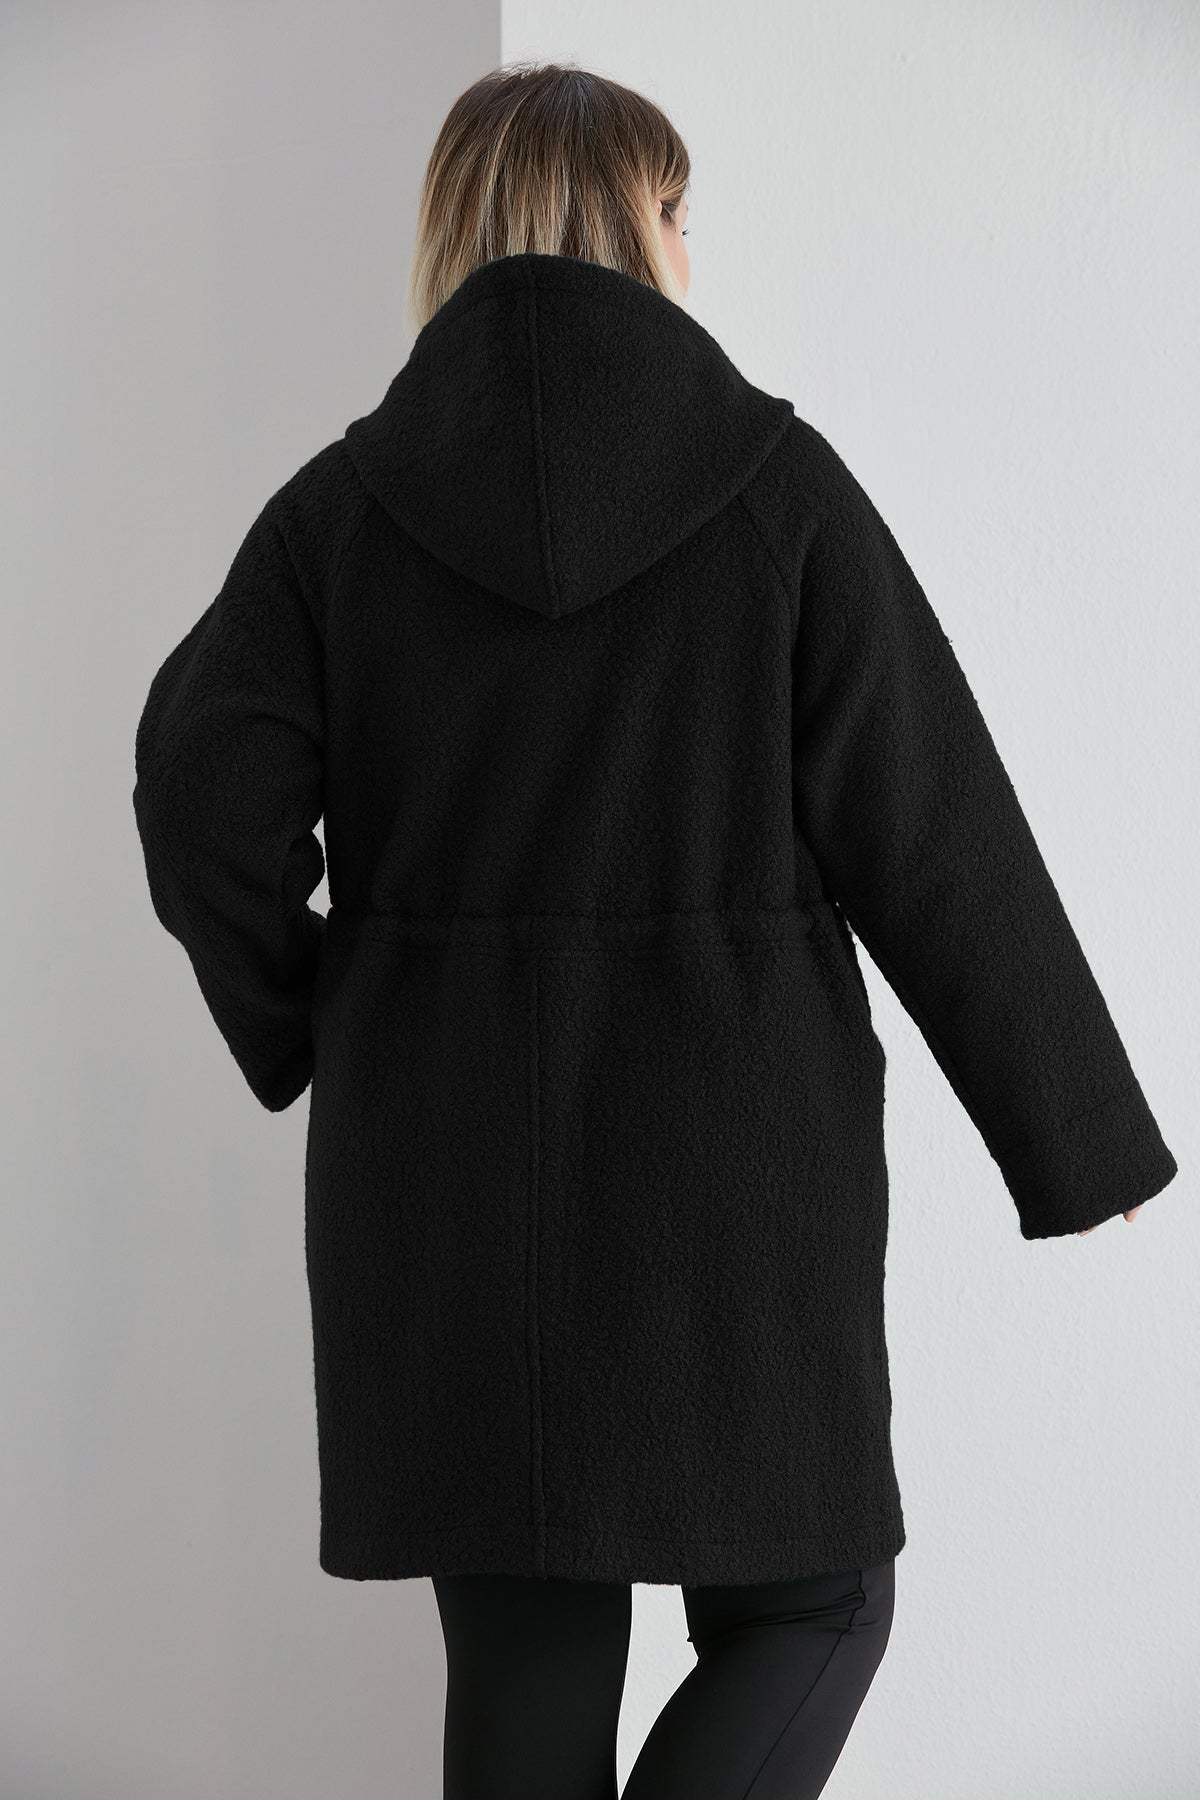 Γυναικείο μακρύ παλτό από μπουκλέ σε μεγάλα μεγέθη - Μαύρο